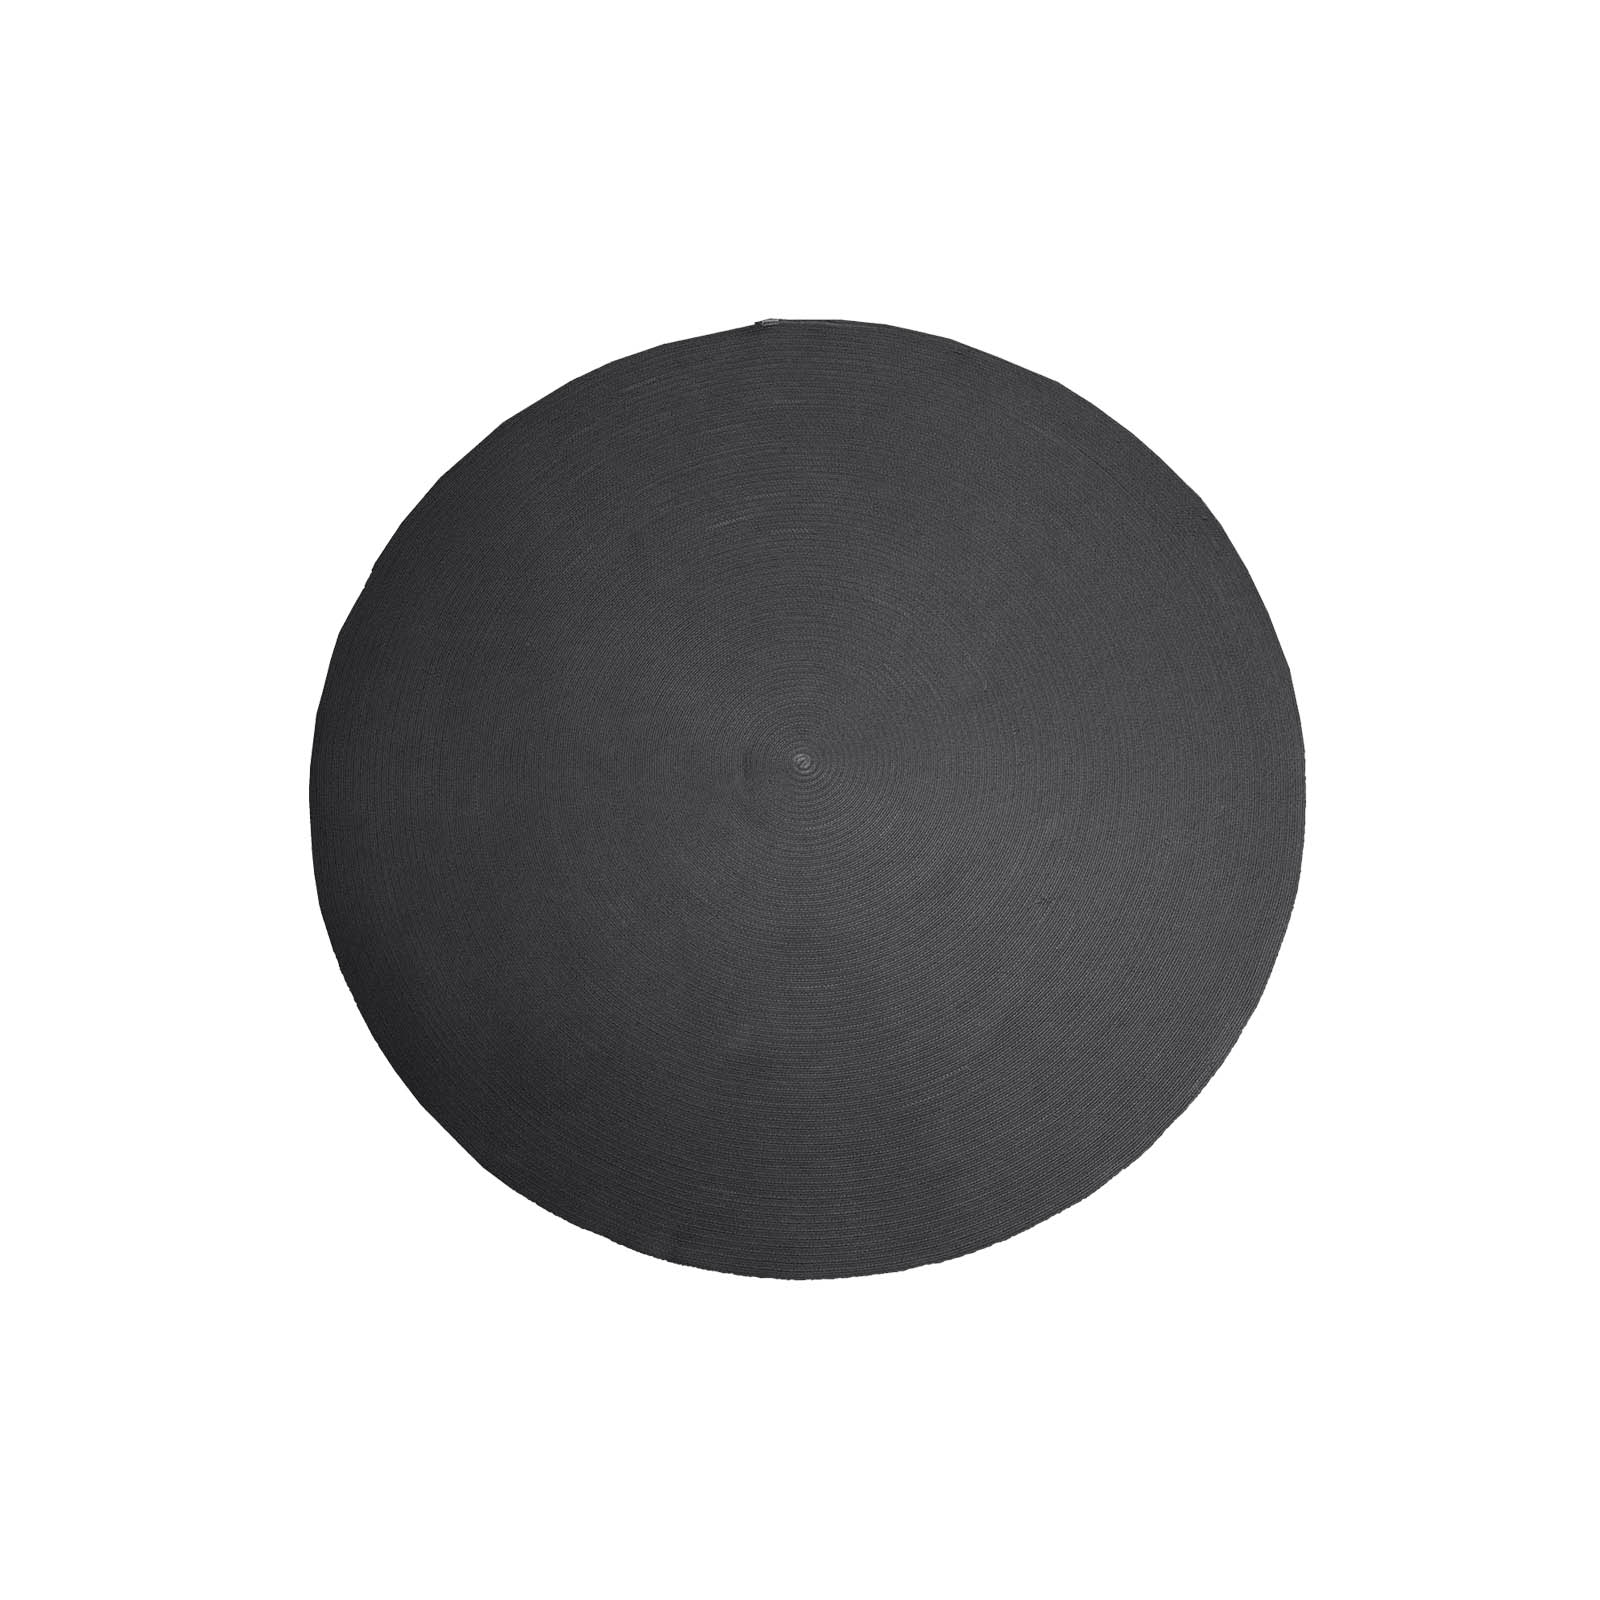 Circle Teppich Durchmesser 200 cm aus Cane-line Soft Rope in Dark Grey